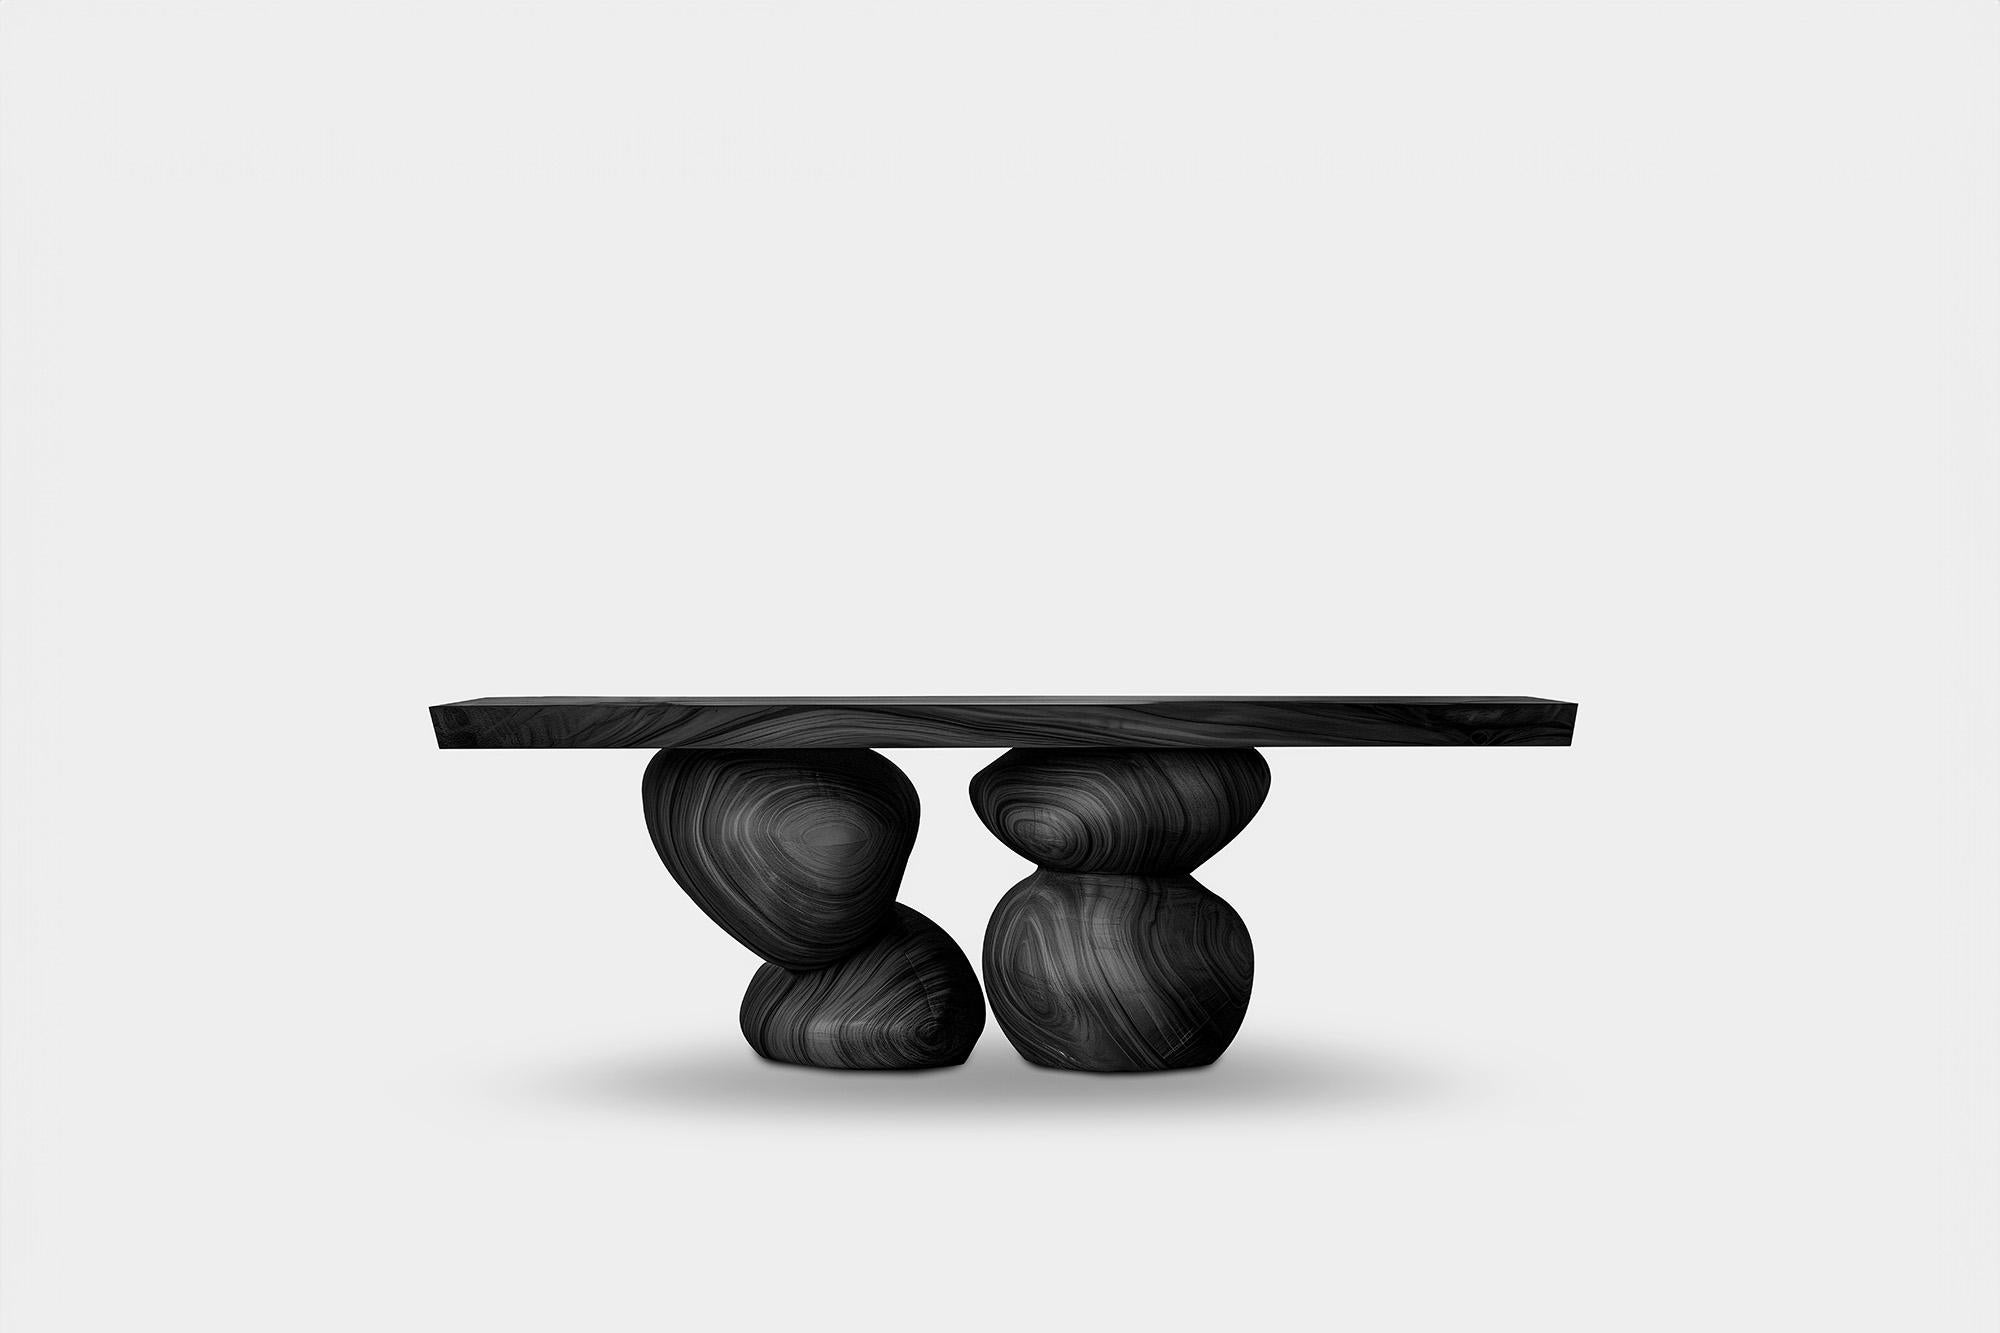 NONO Elefante Sideboard 36, Design by Joel Escalona Craft, Wood Swirls

—————————————————————
Elefante Collection'S: Eine Harmonie aus Design und Tradition von NONO

Handwerkliche Eleganz mit modernistischem Touch

NONO, bekannt für seine